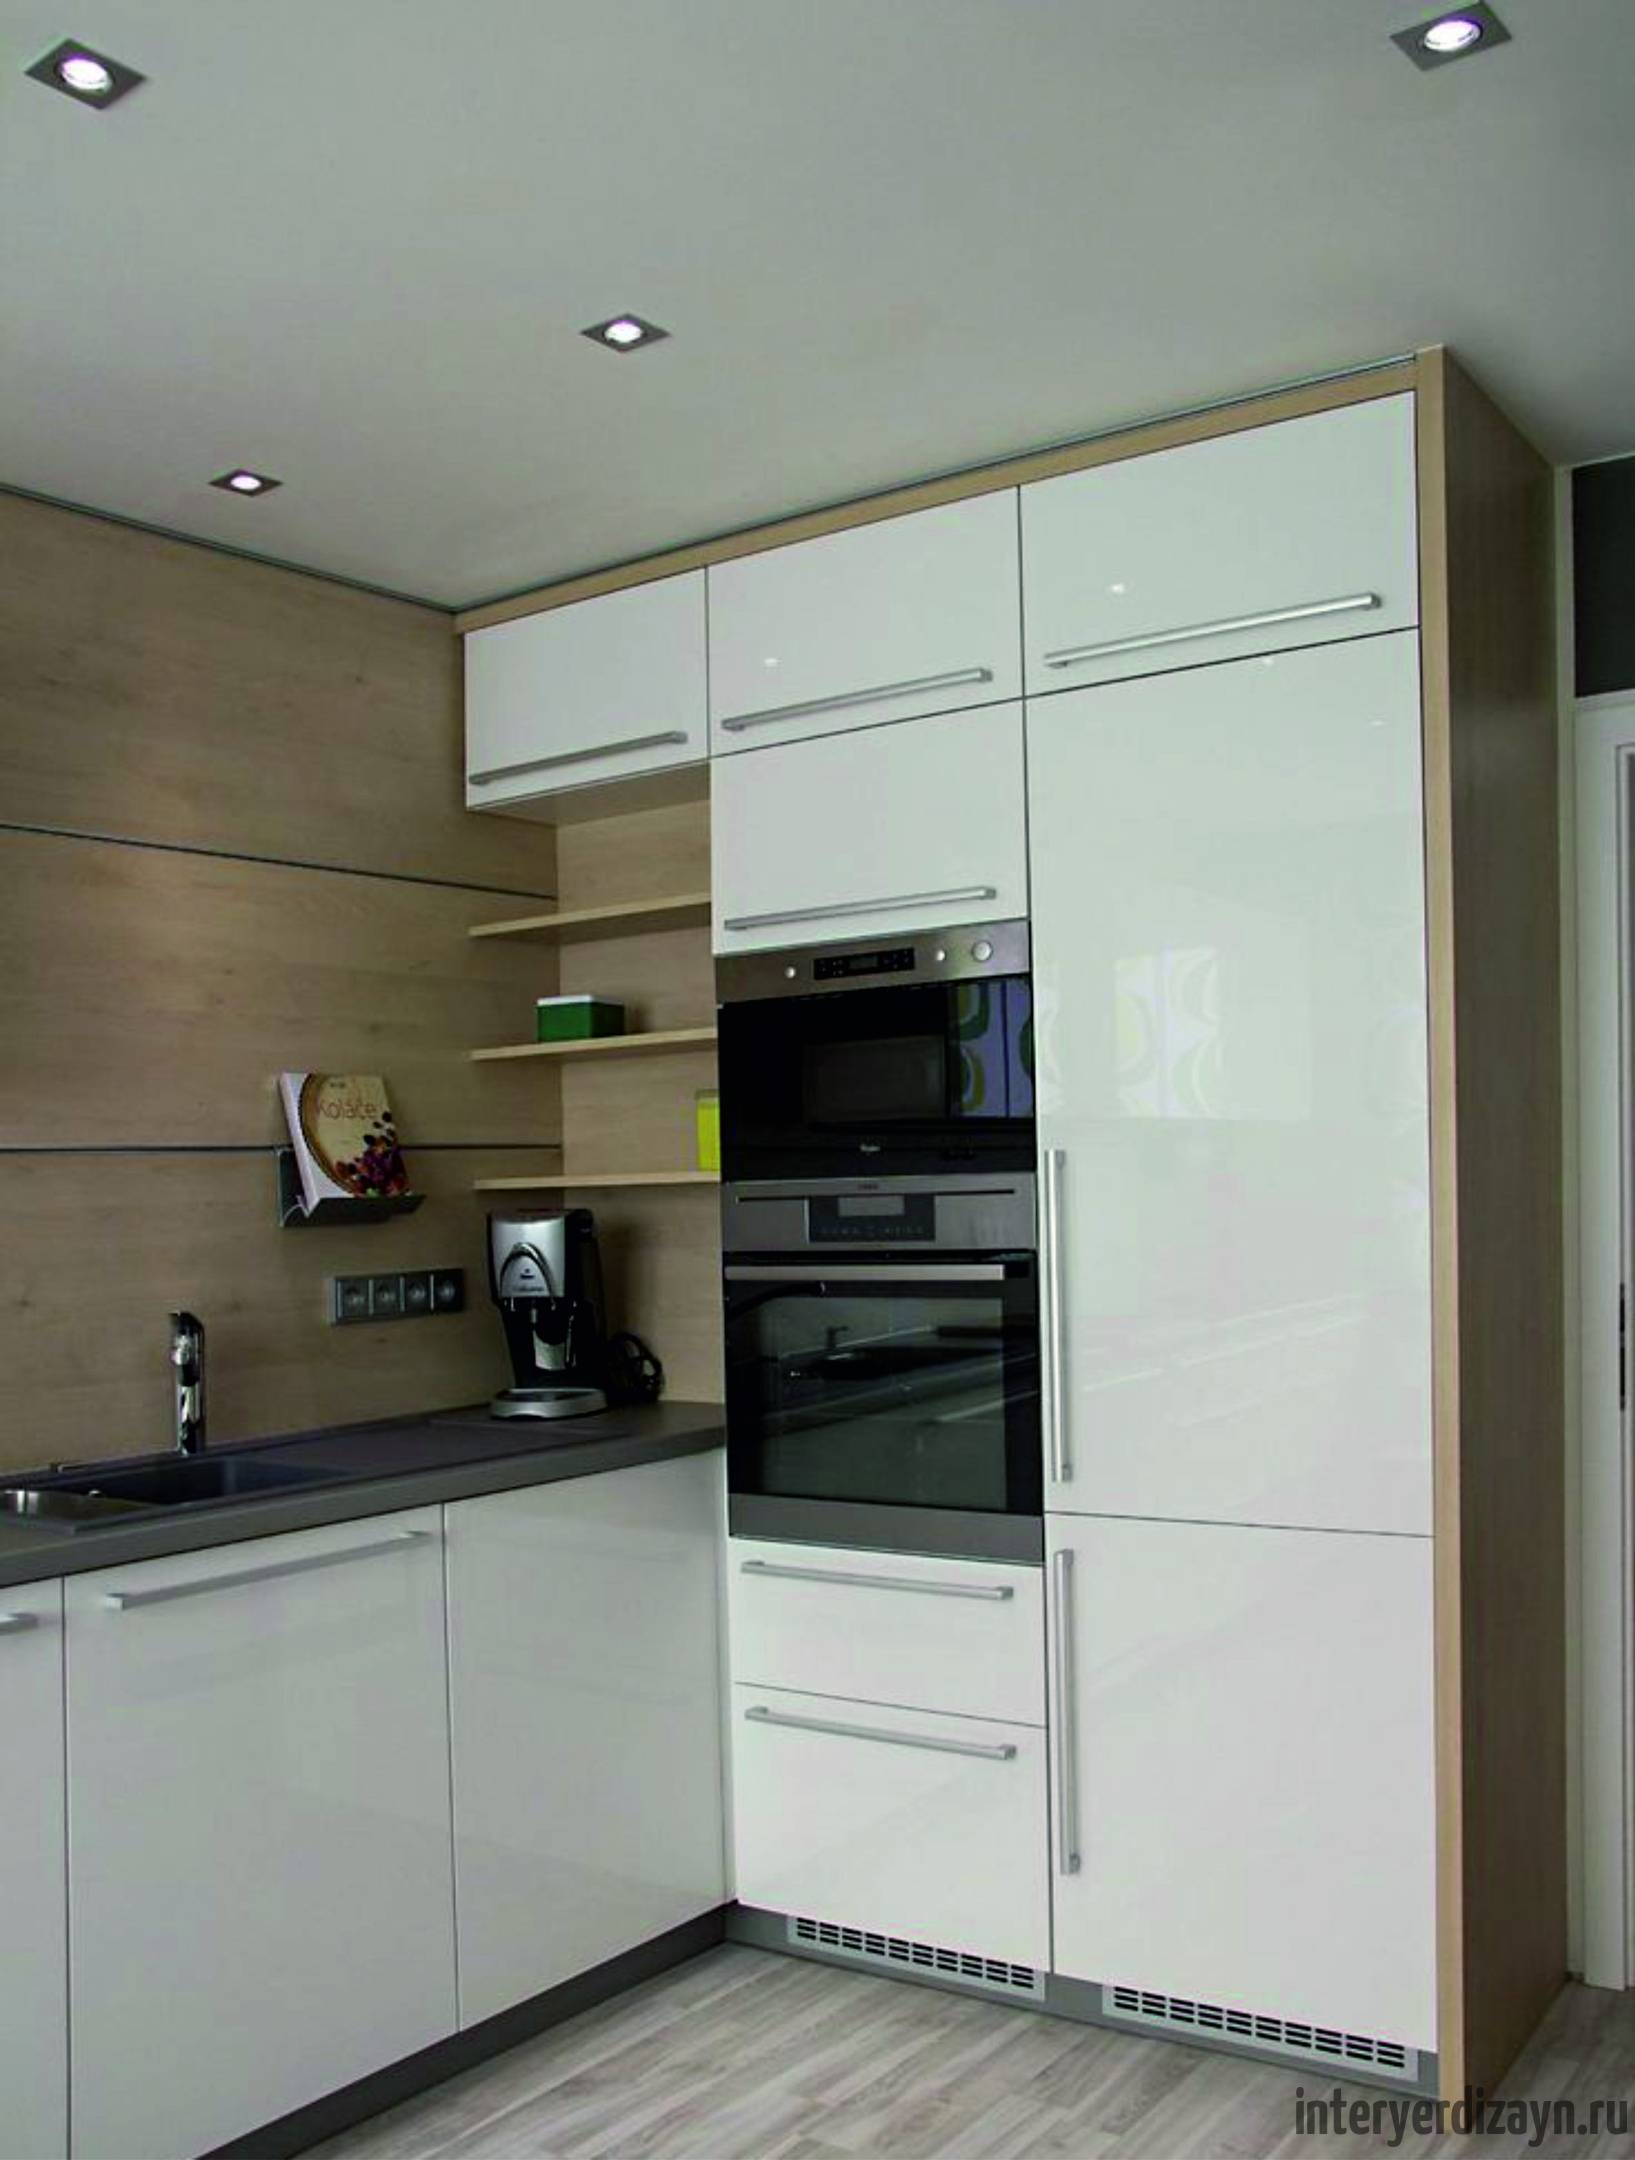 Примеры дизайна кухонь 14 метров, варианты зонирования